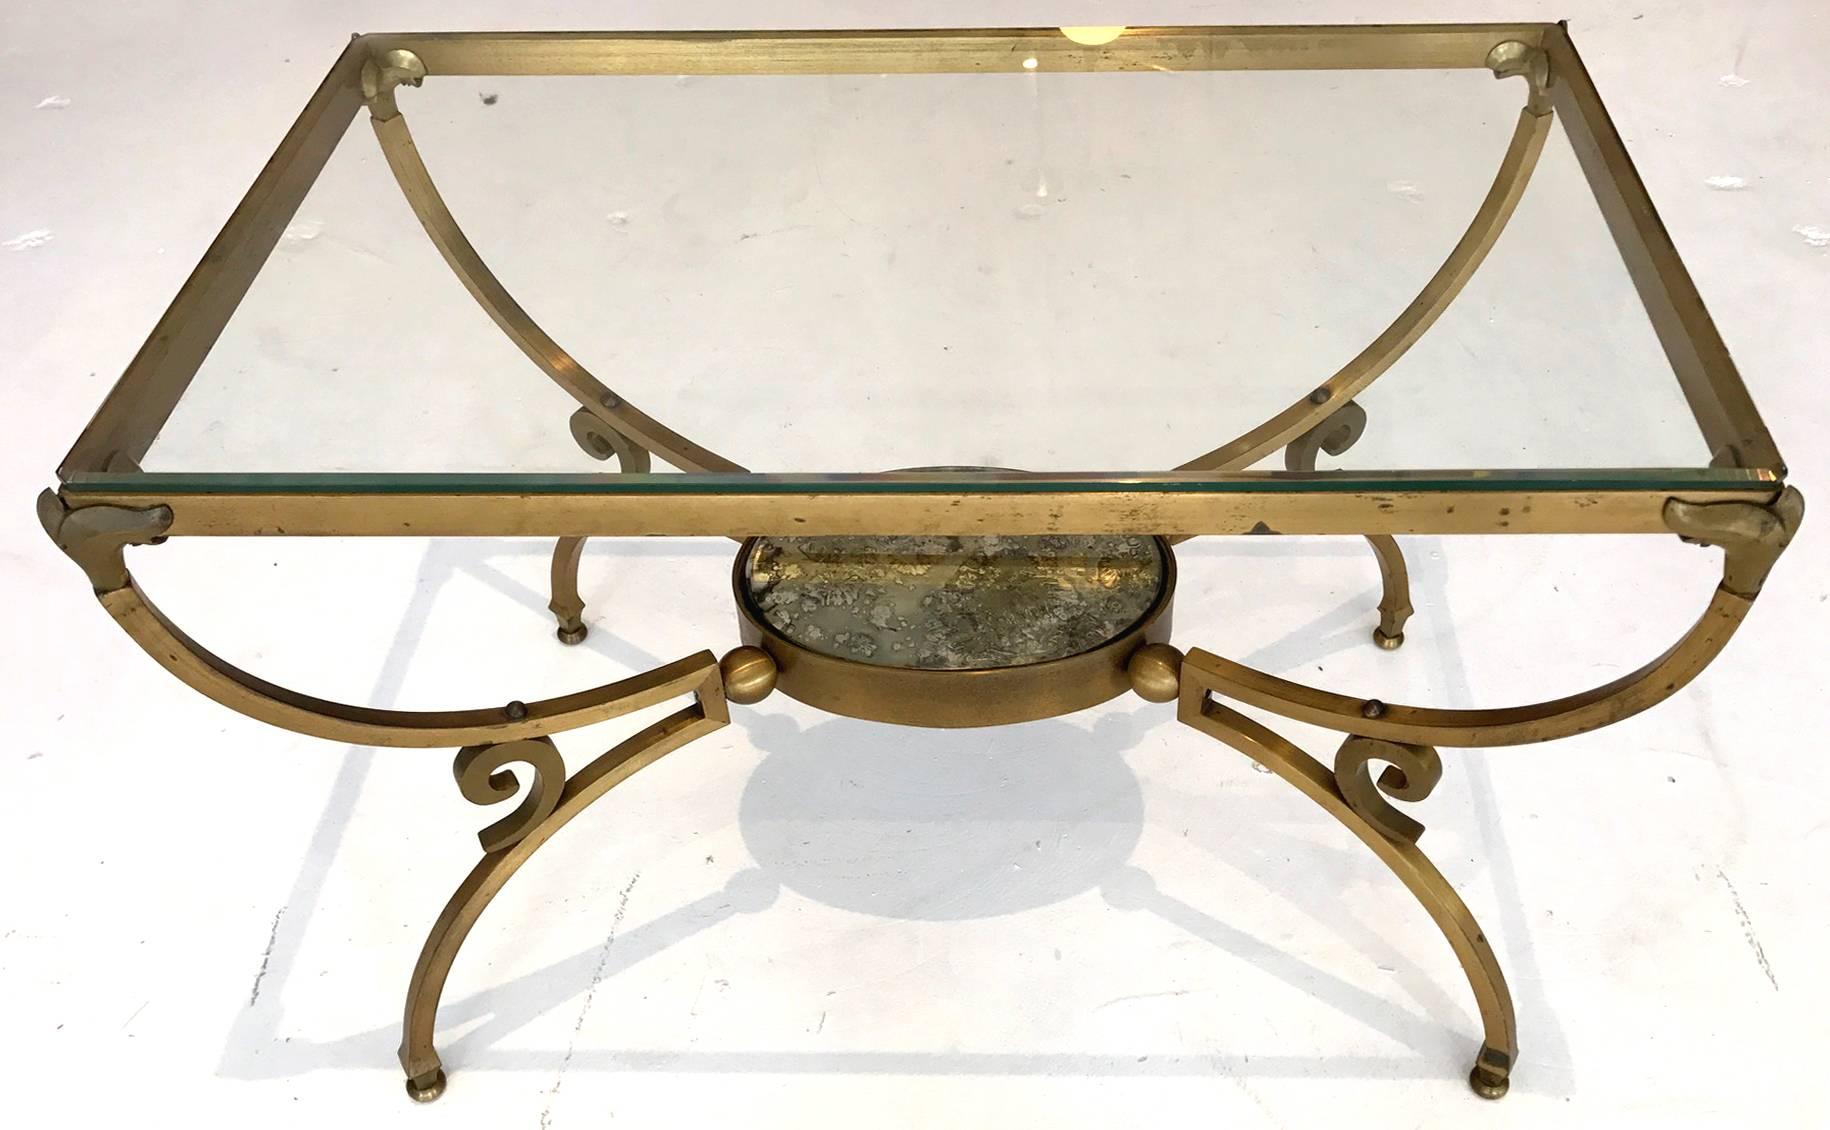 Conçue par Arturo Pani et fabriquée par des artisans du métal vers les années 1950, modèle no 3026, cette paire de tables d'appoint en bronze met en valeur l'exubérance caractéristique du designer. Glamour dans son ambiance Hollywood Regency, le